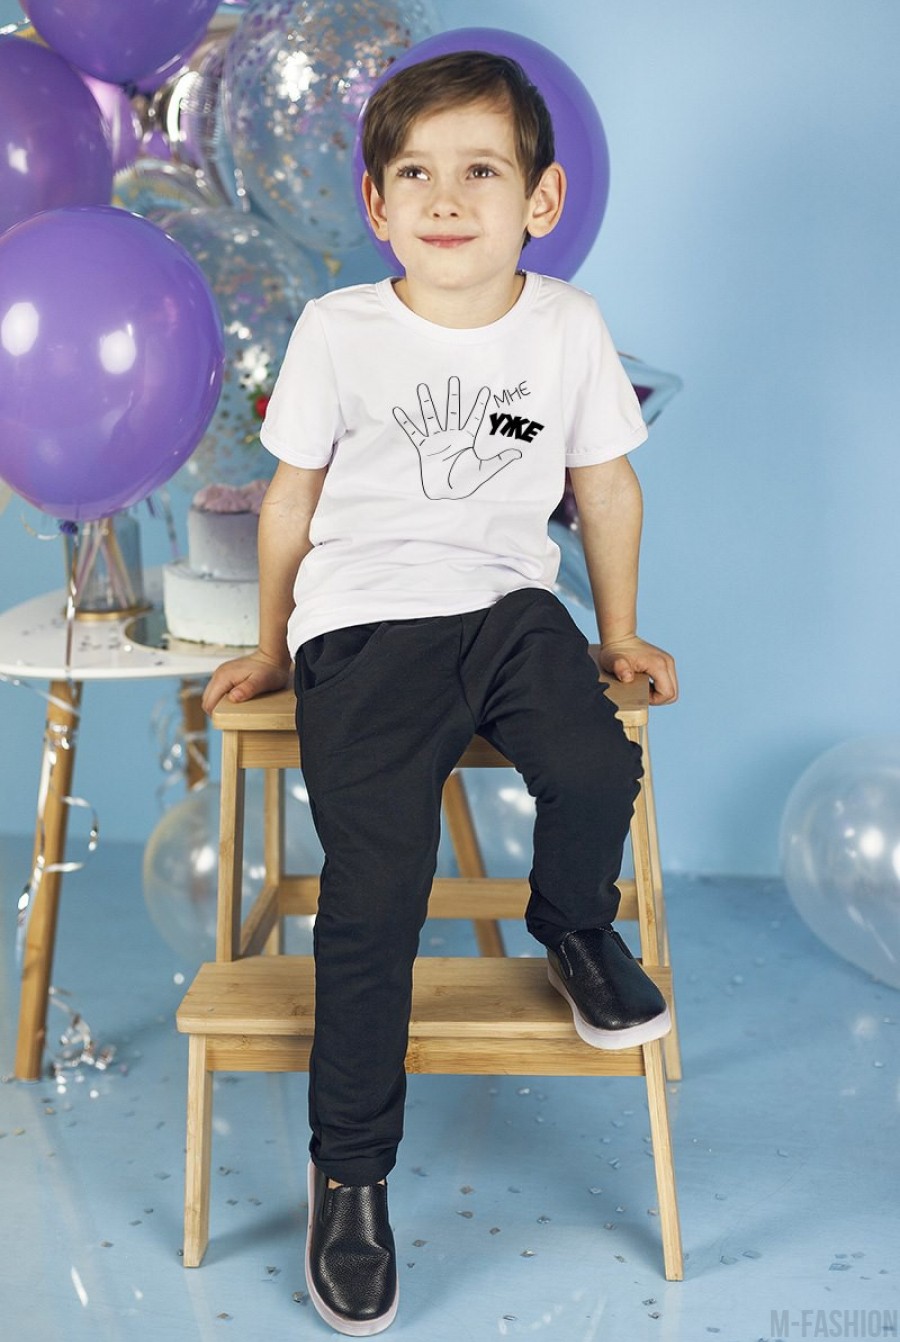 Хлопковая футболка с возможностью индивидуальной печати принта (1-5) из пальцев- Фото 2